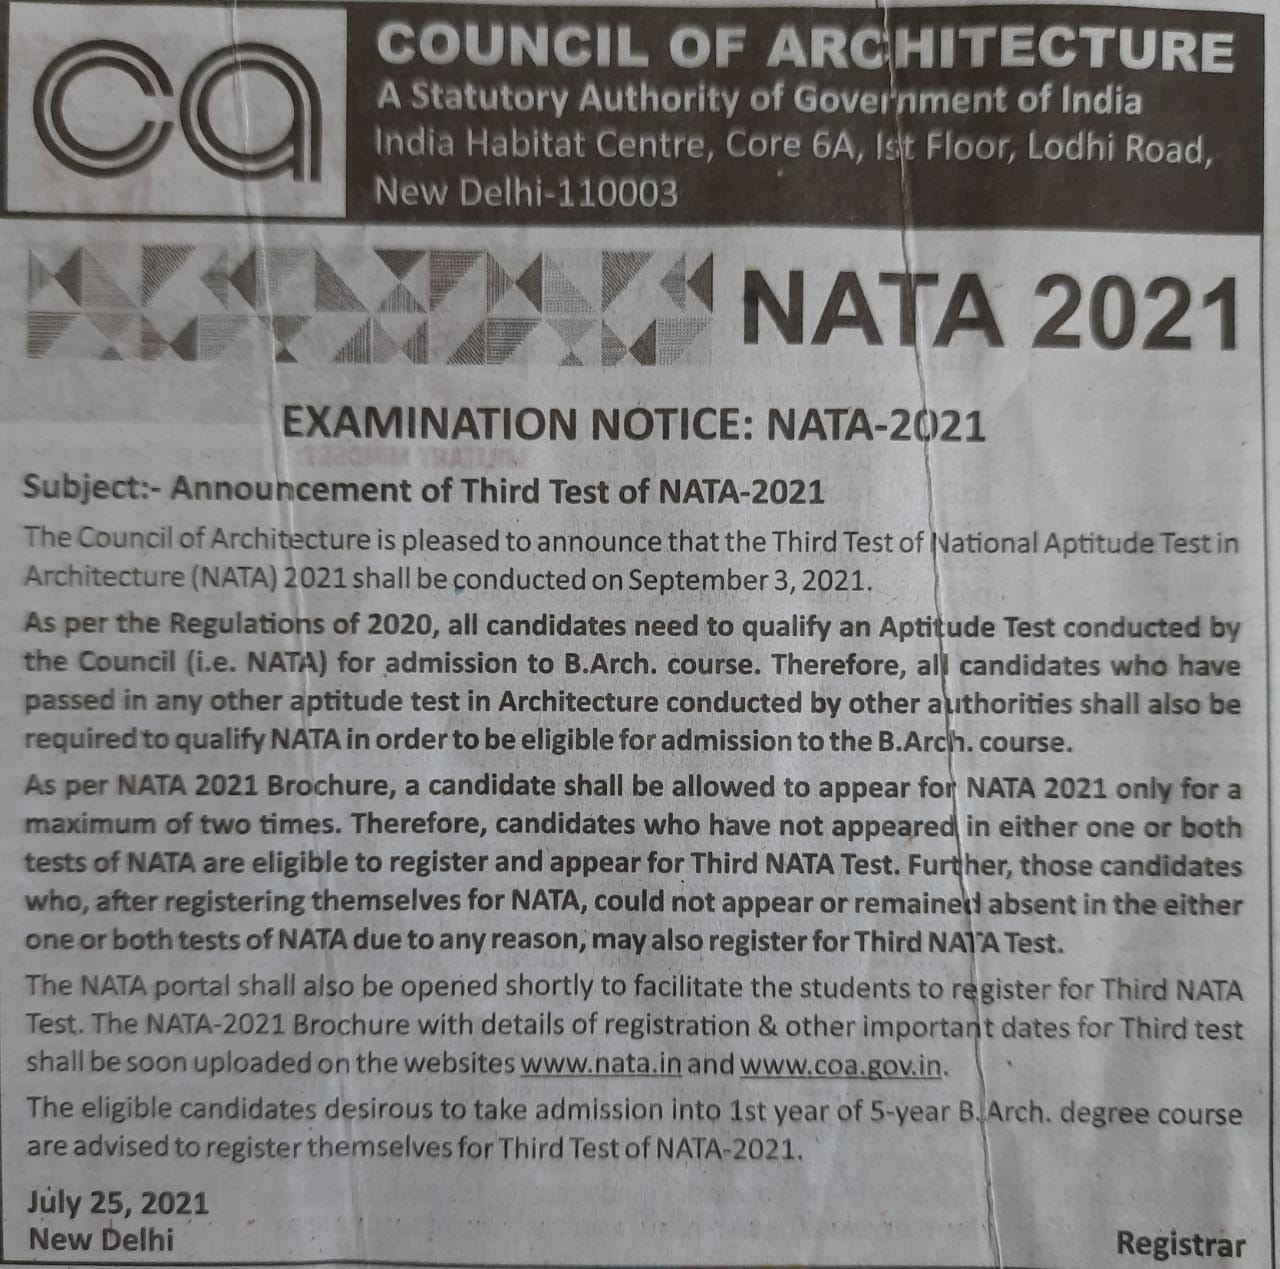 3rd test of NATA on 3rd September 2021